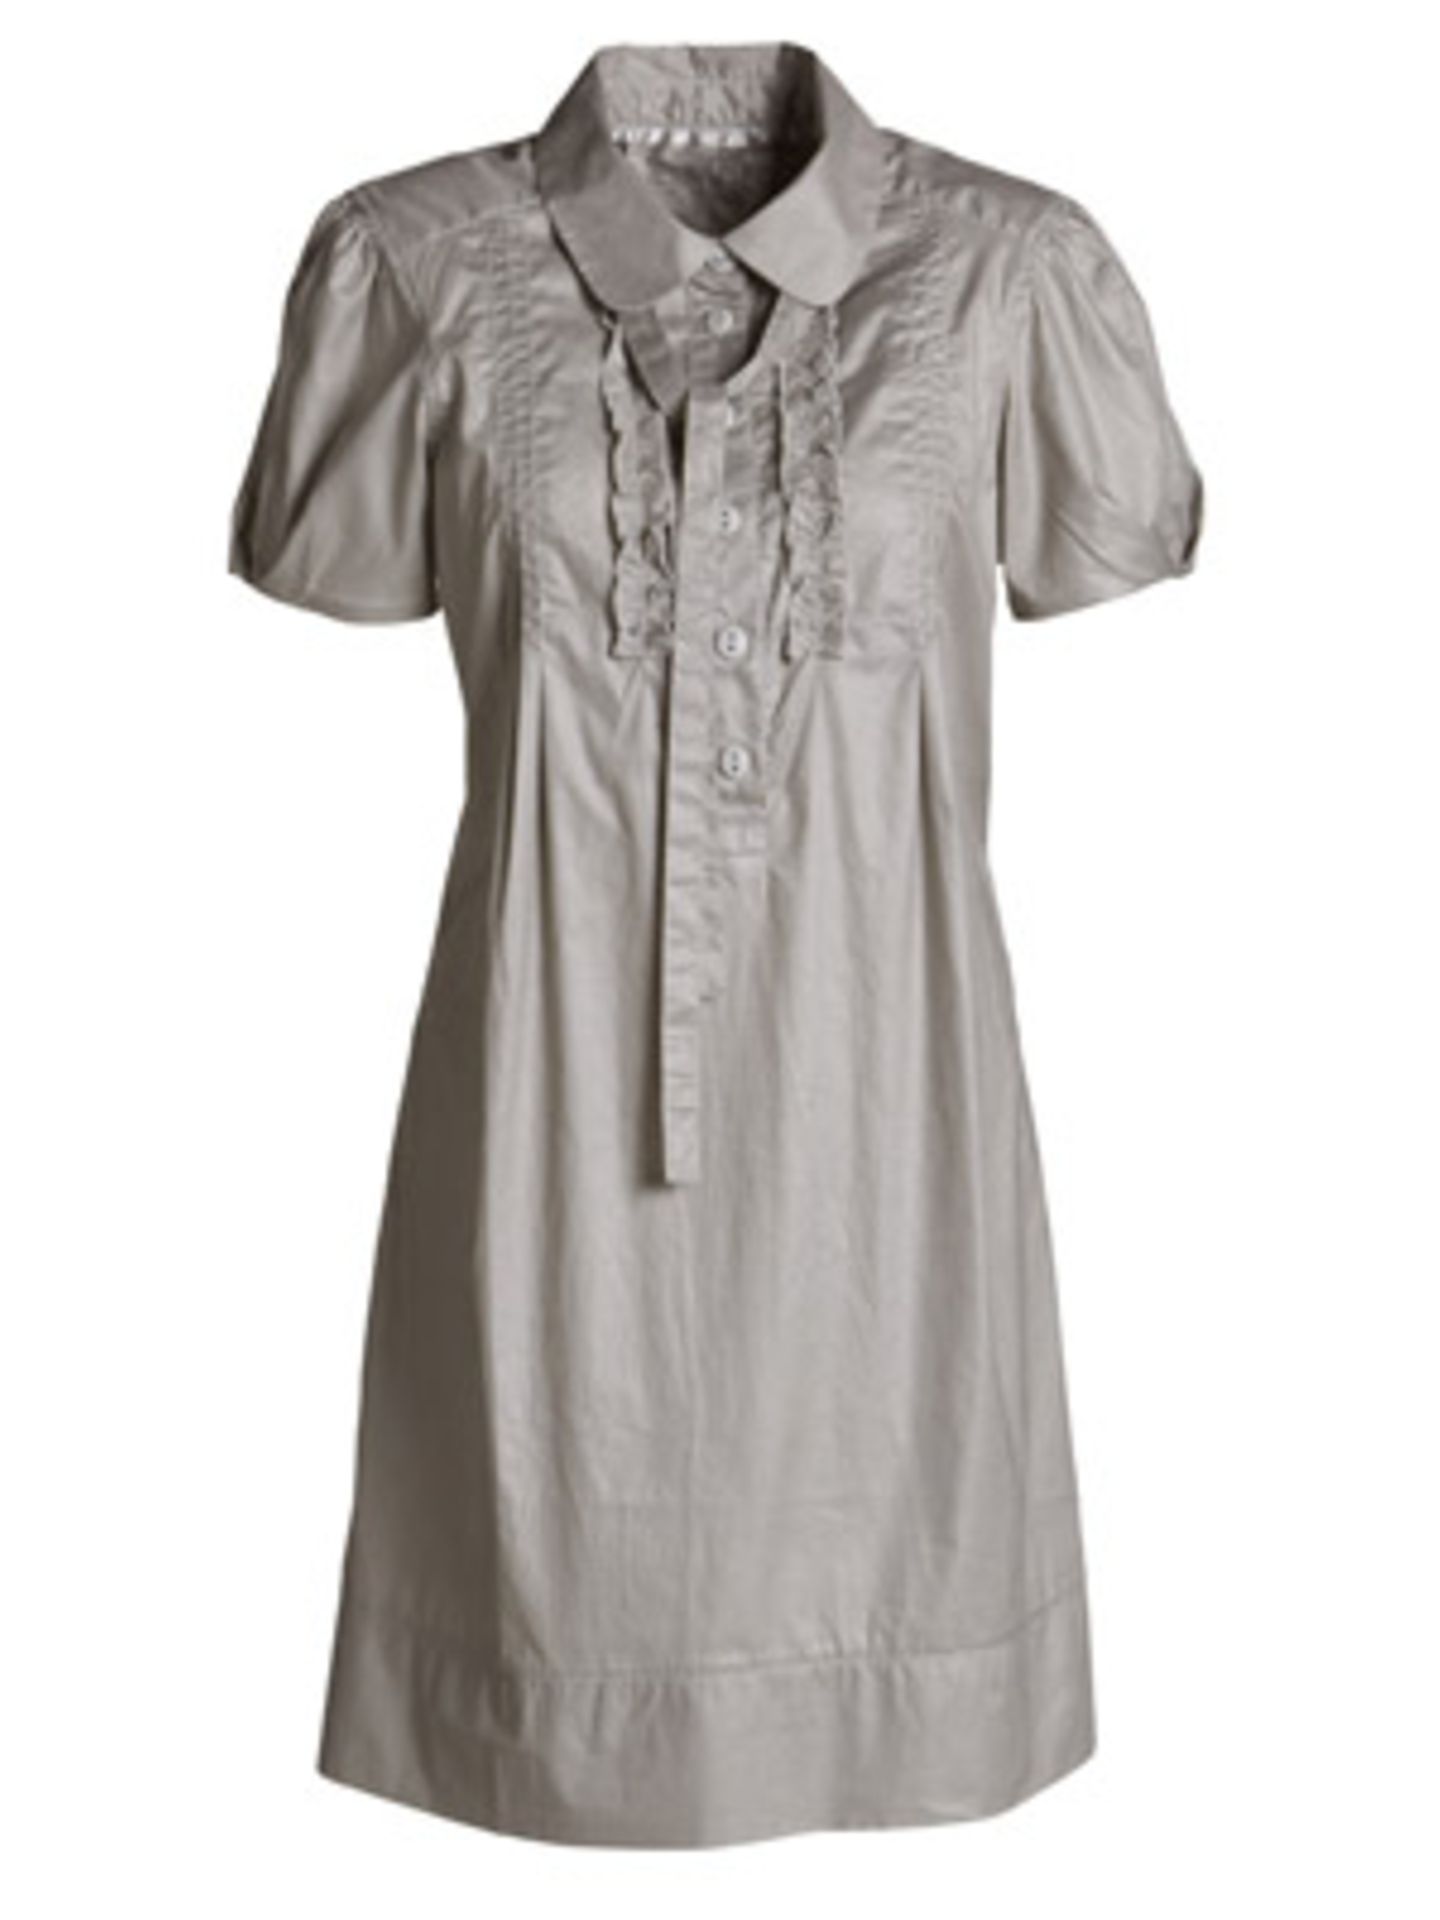 Blusenkleid mit Rüschen und Schleife am Kragen in einem warmen Grauton von edc by Esprit, ca. 50 Euro.